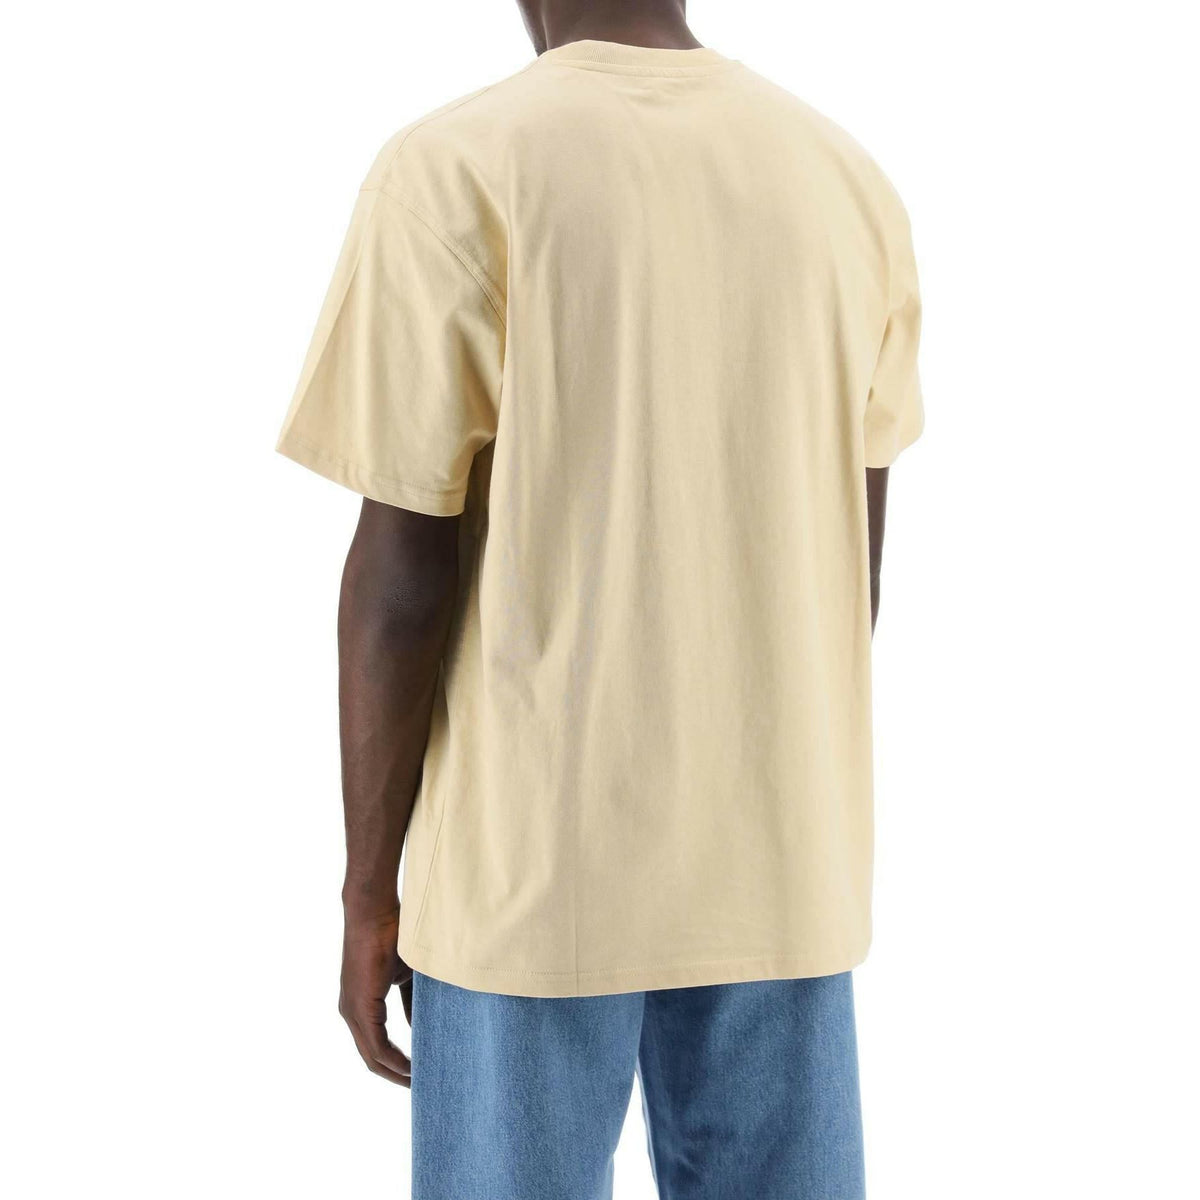 CARHARTT WIP - Organic Cotton T-Shirt - JOHN JULIA